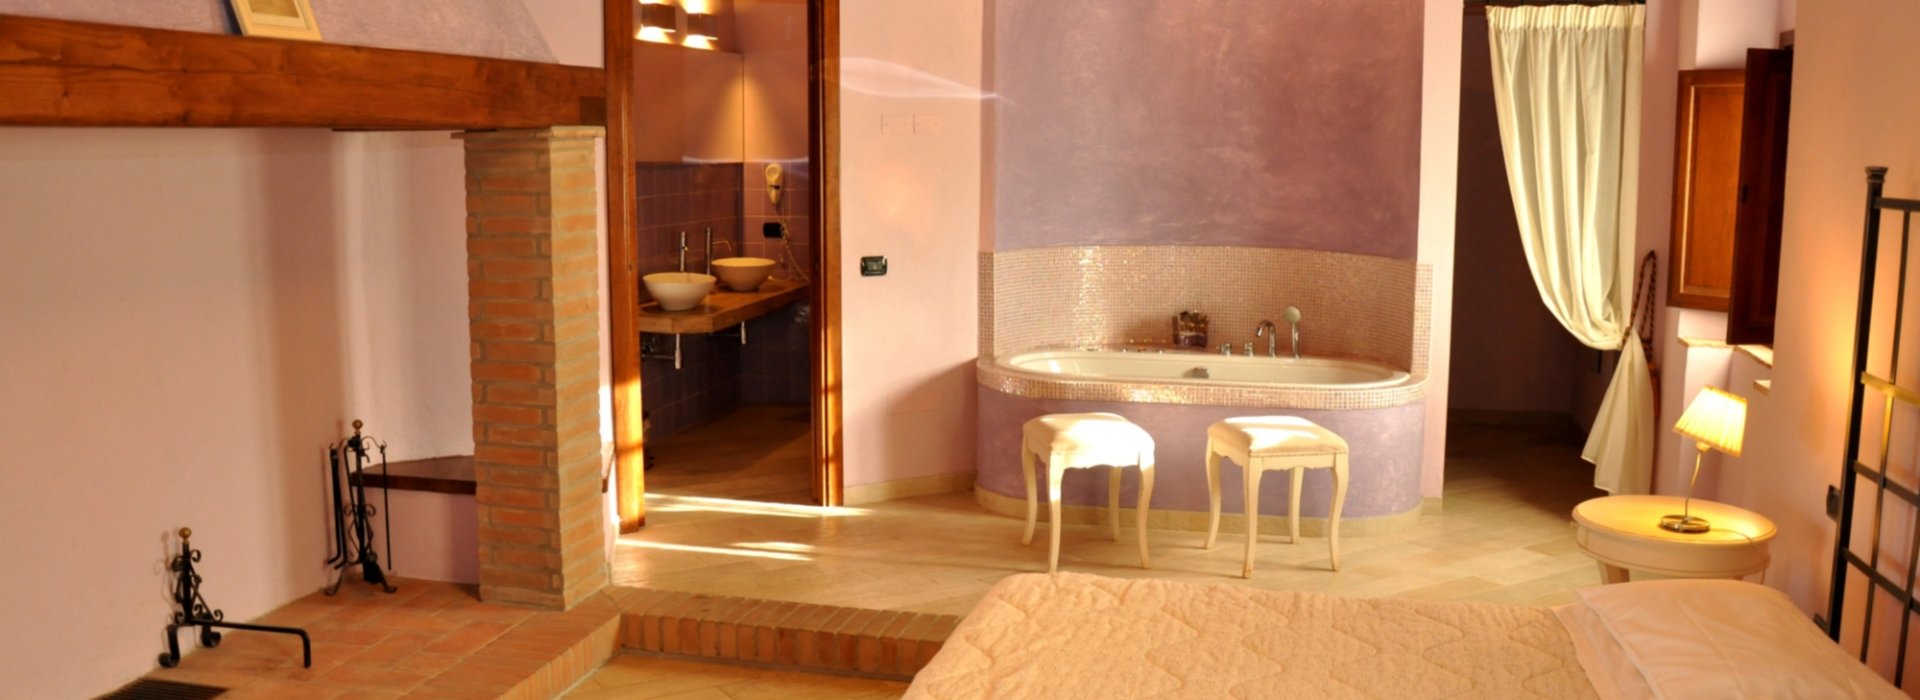 Soggiorno romantico a Empoli in suite con vasca idromassaggio